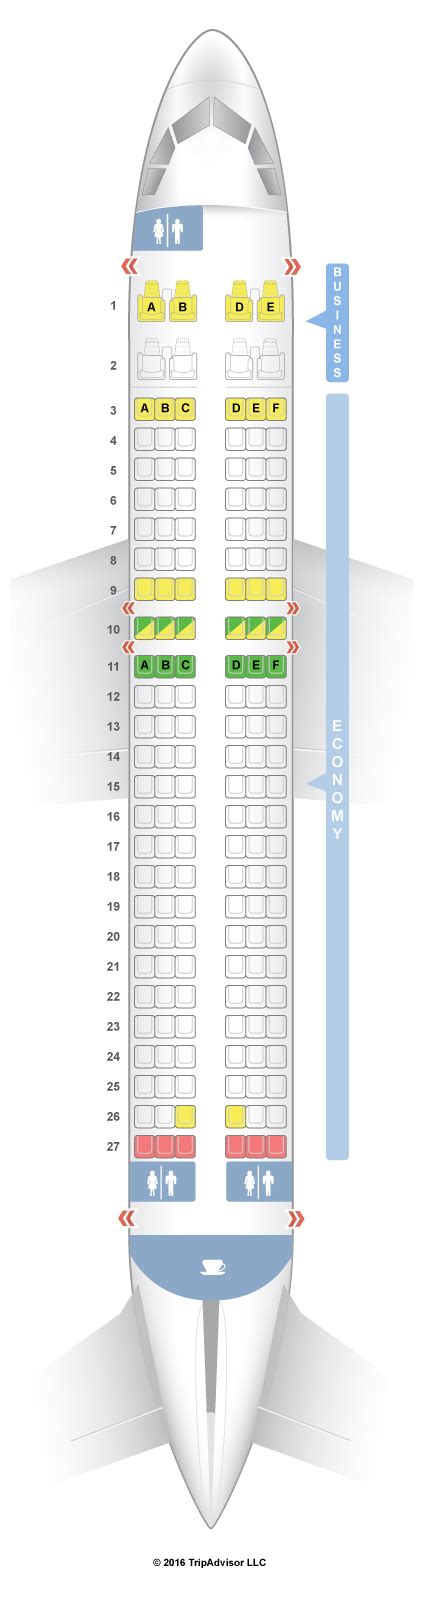 Seatguru Seat Map S7 Airlines Airbus A320 320 Seatguru